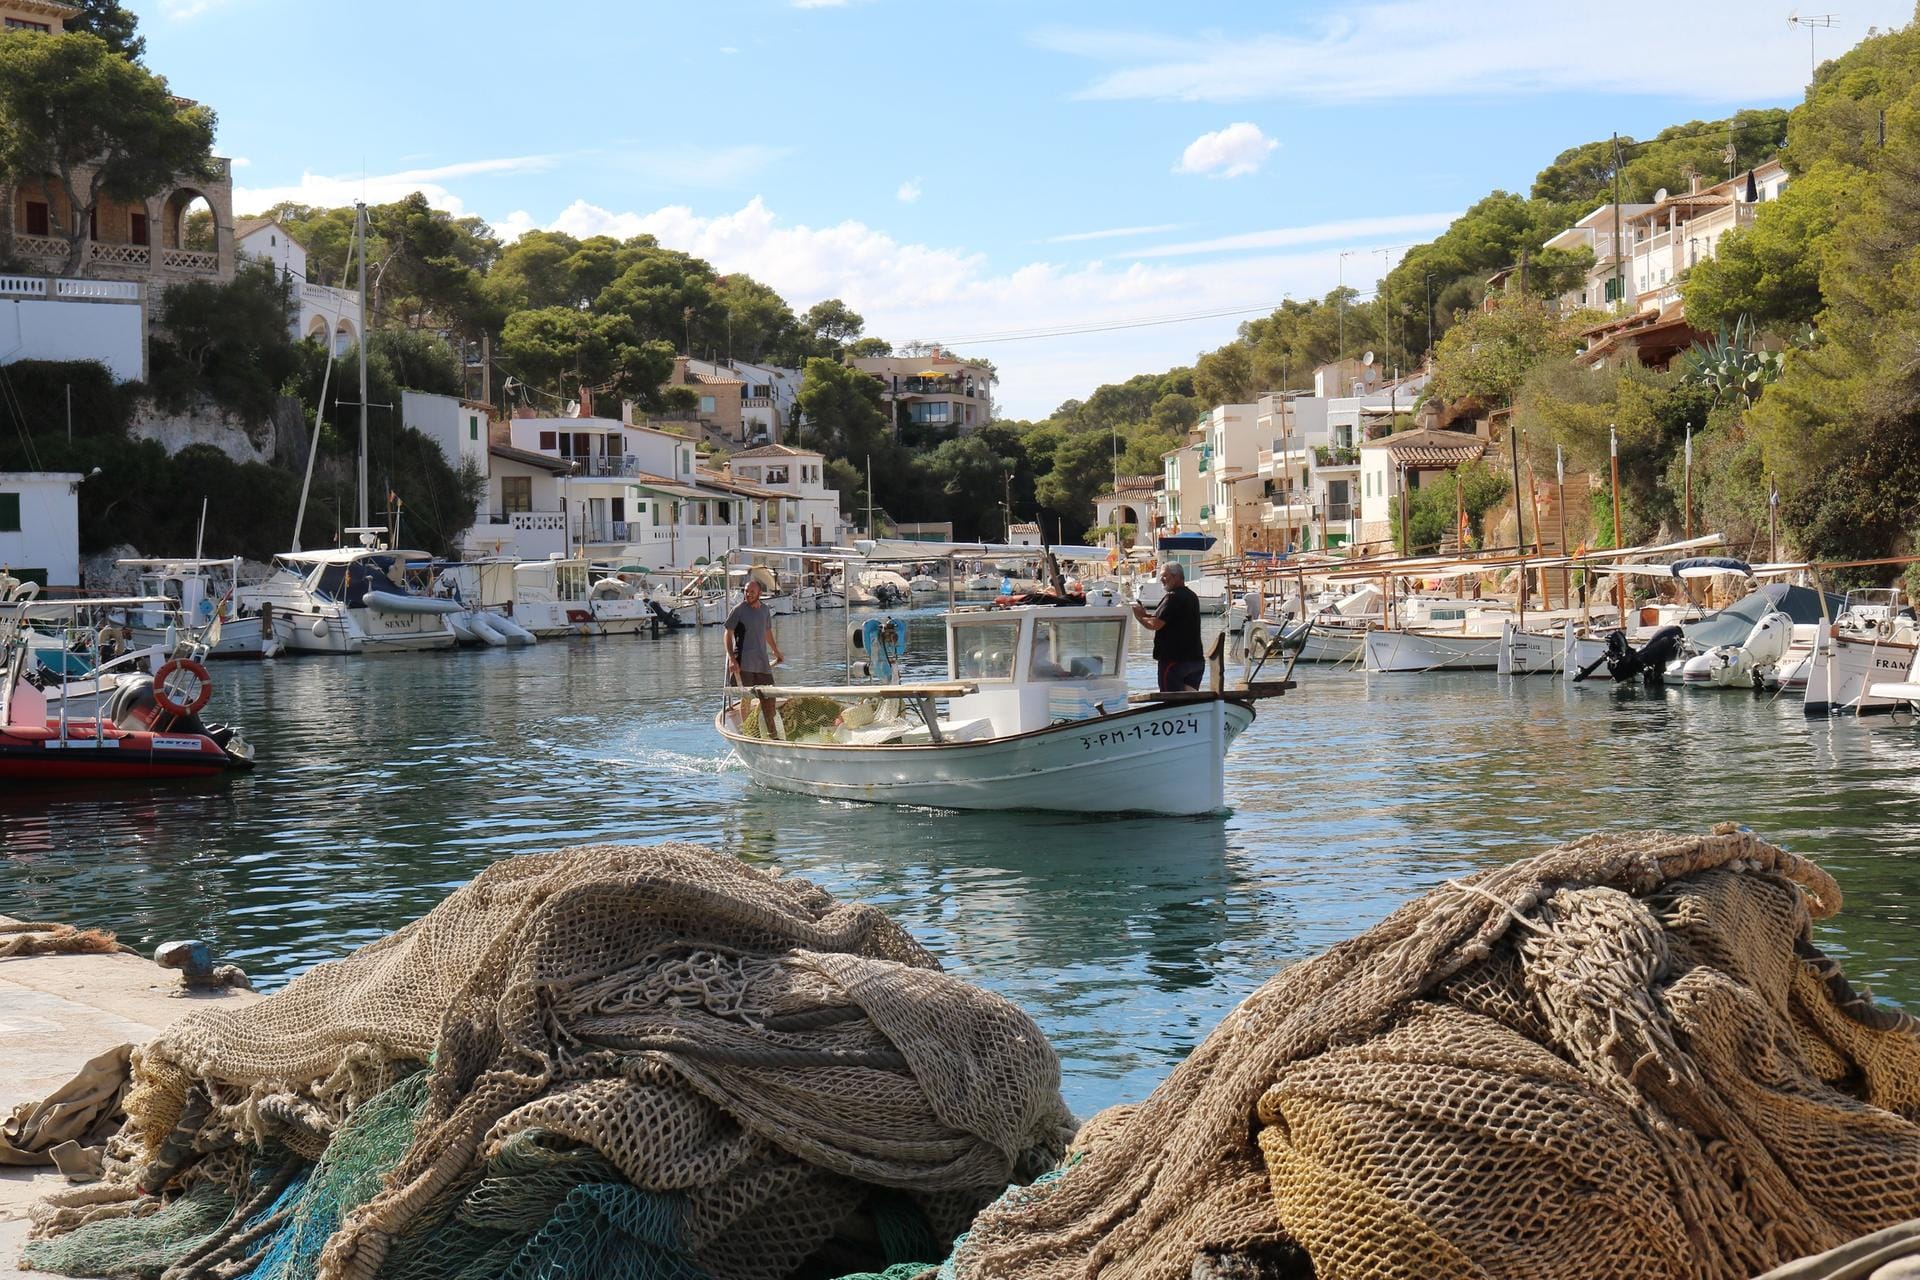 Fischerdorf Cala Figuera: Hier ist alles noch recht traditionell, Fischer nähen ihre Netze und das Meer schimmert zwischen den hellen Häusern mit den grünen Bootsgaragen.